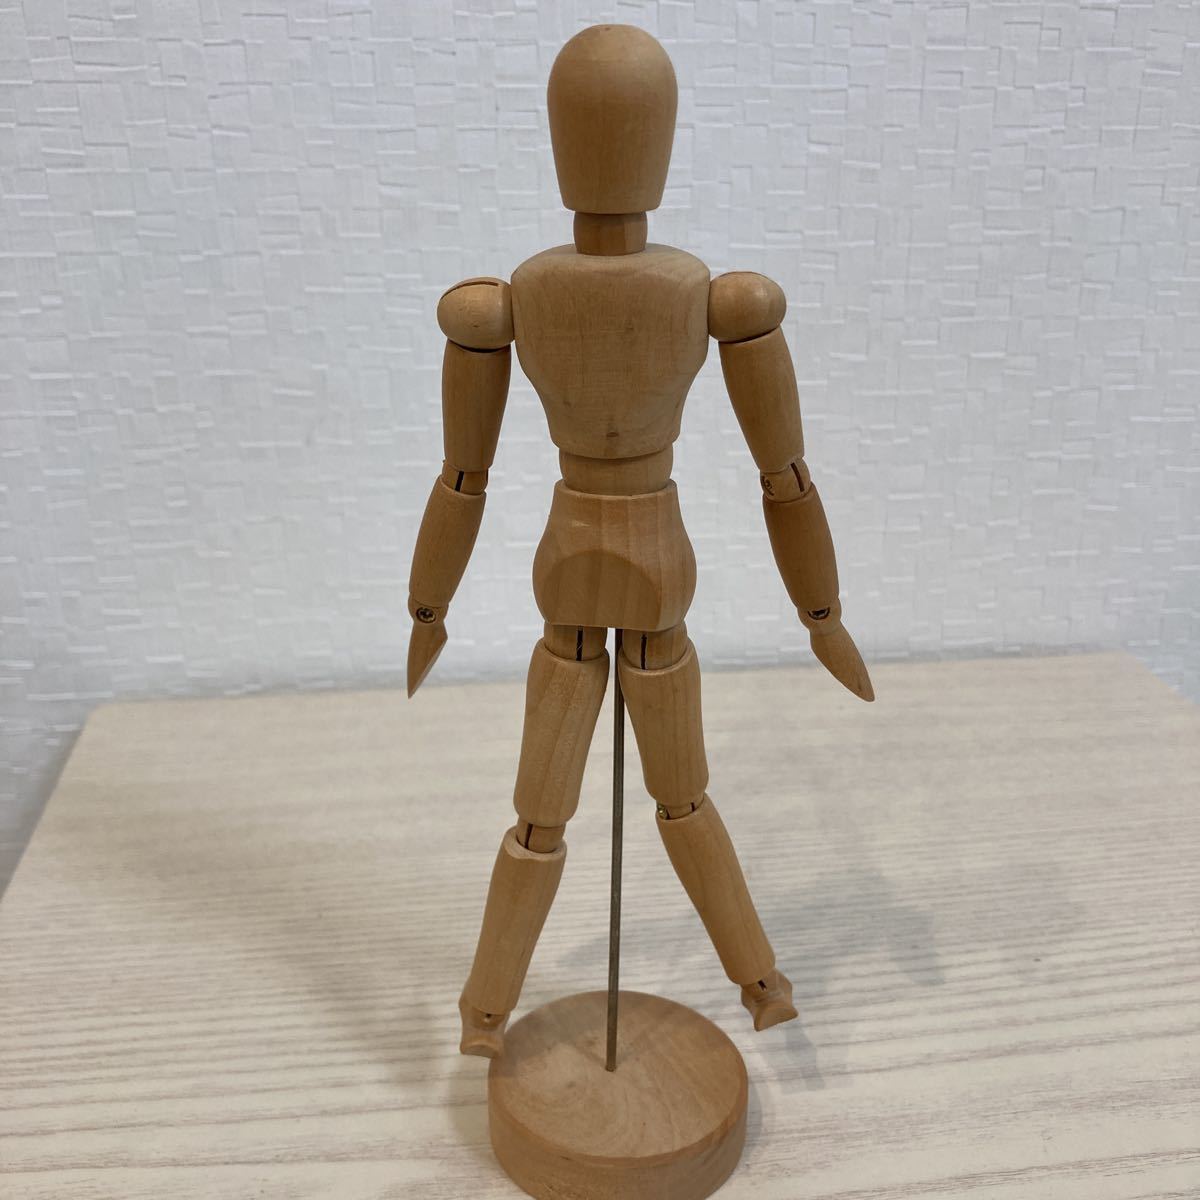 デッサン人形 木製 モデル 可動式 漫画模型 マネキン 関節人形 素体 デッサン用 モデル人形 フィギュア 美術 ドール 木の人形 